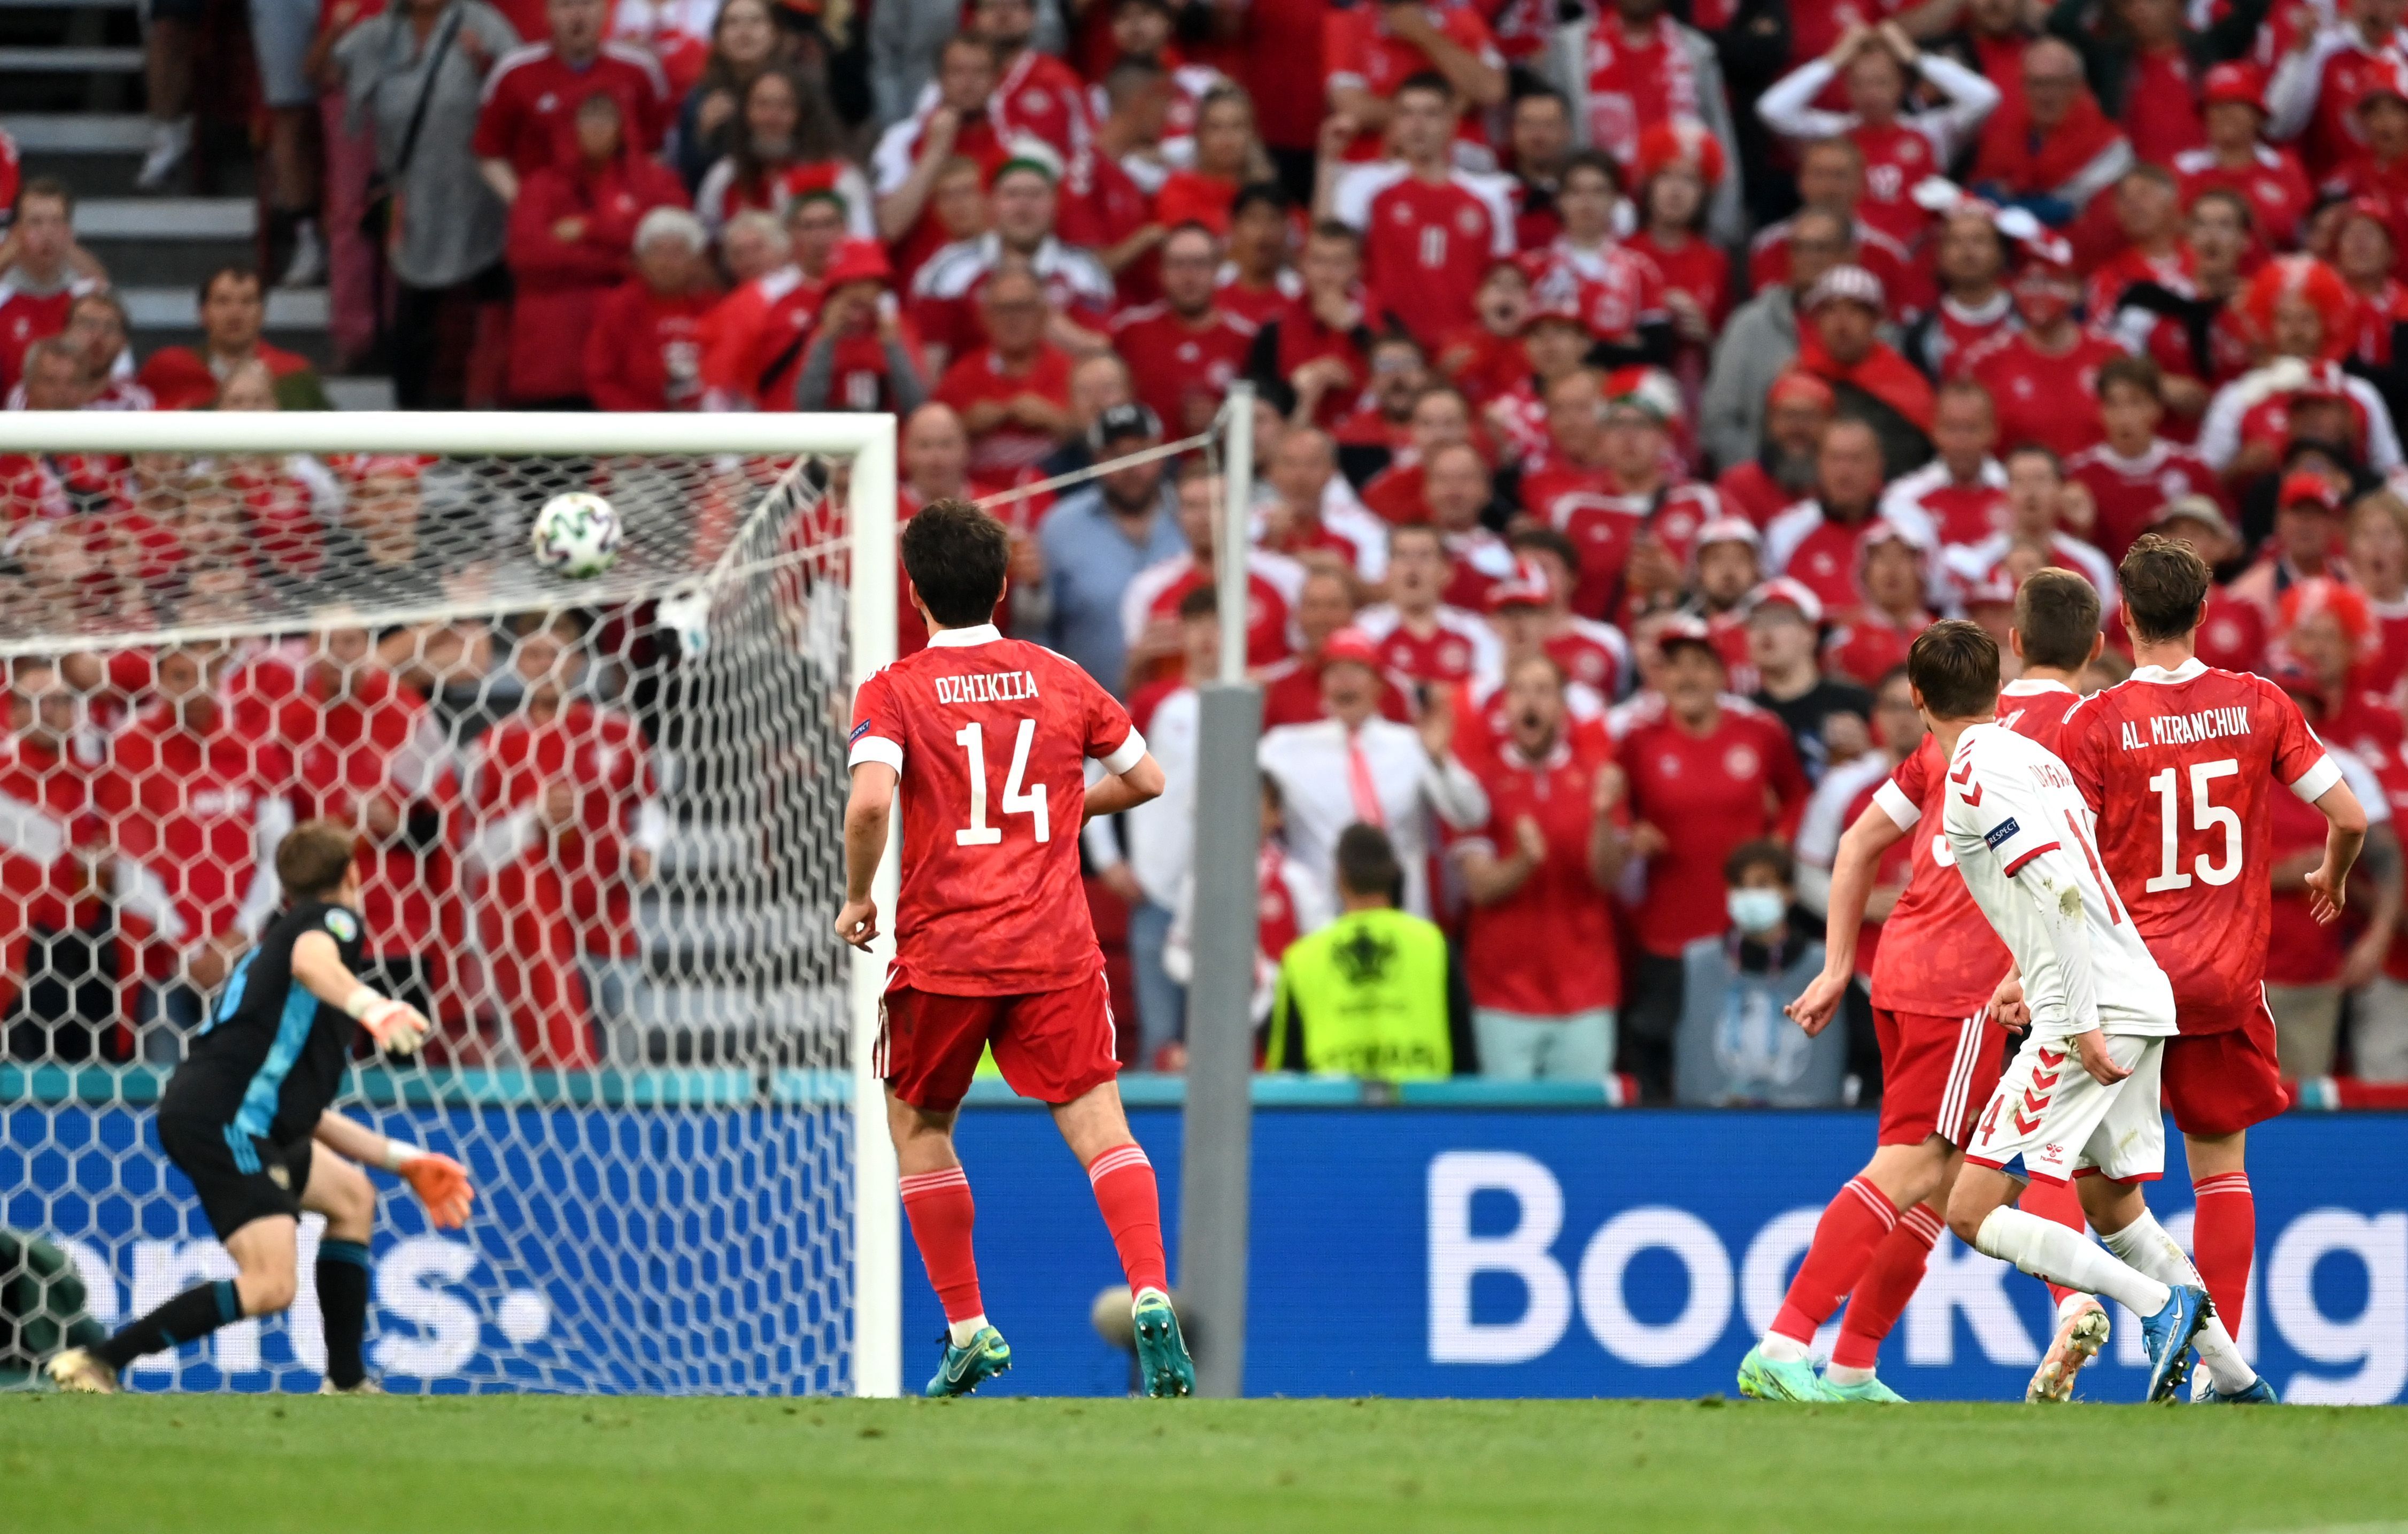 Міккель Дамсгор забив гол у матчі Росія - Данія на Євро-2020